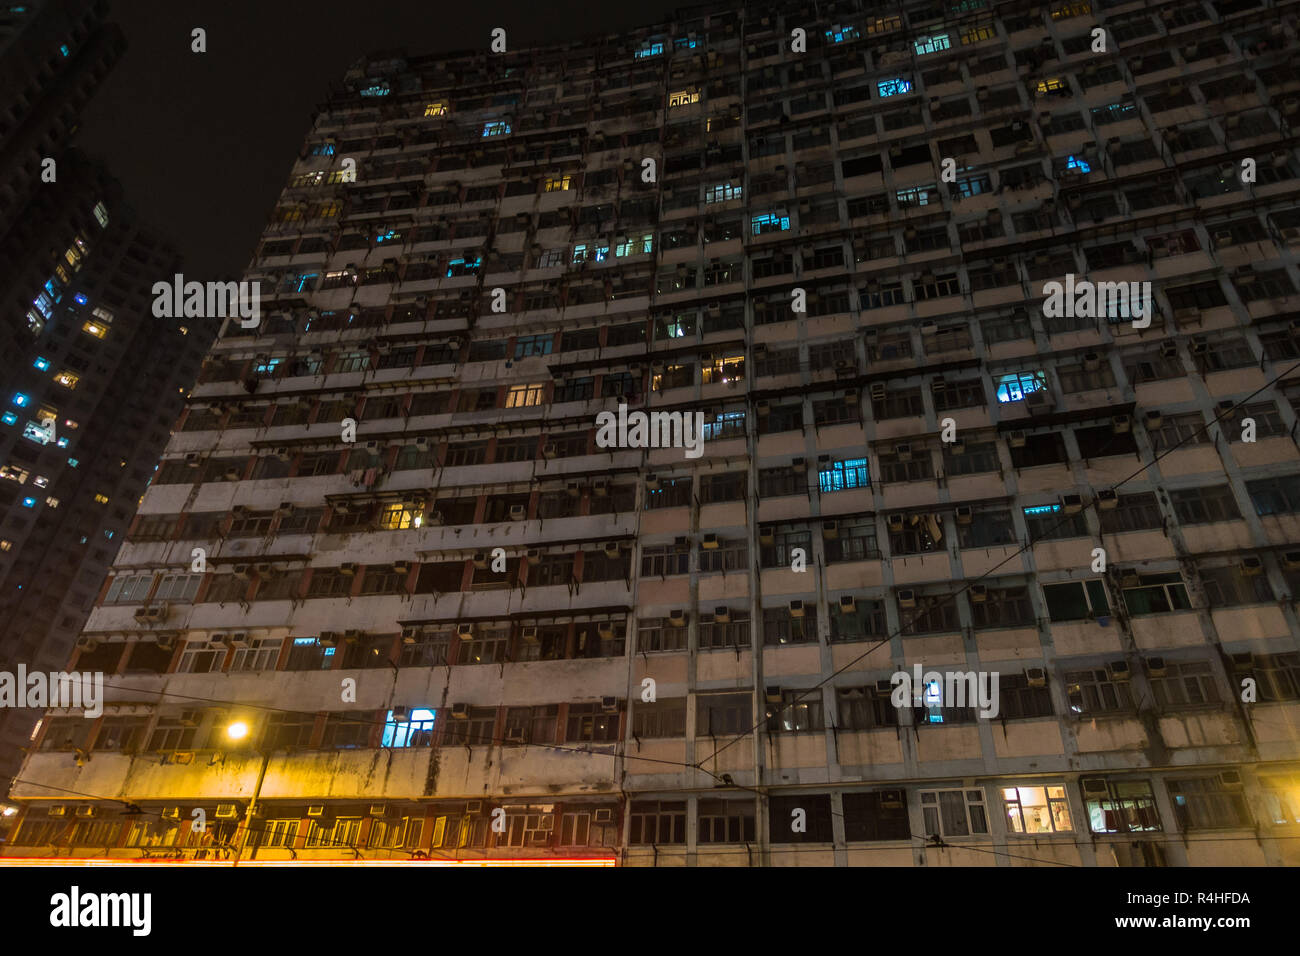 Nacht Blick auf Montane Herrenhaus aus King's Road, einem berühmten laufen - Dow und überfüllten Gebäude in Hong Kong. Hong Kong, Quarry Bay, Januar 2018 Stockfoto